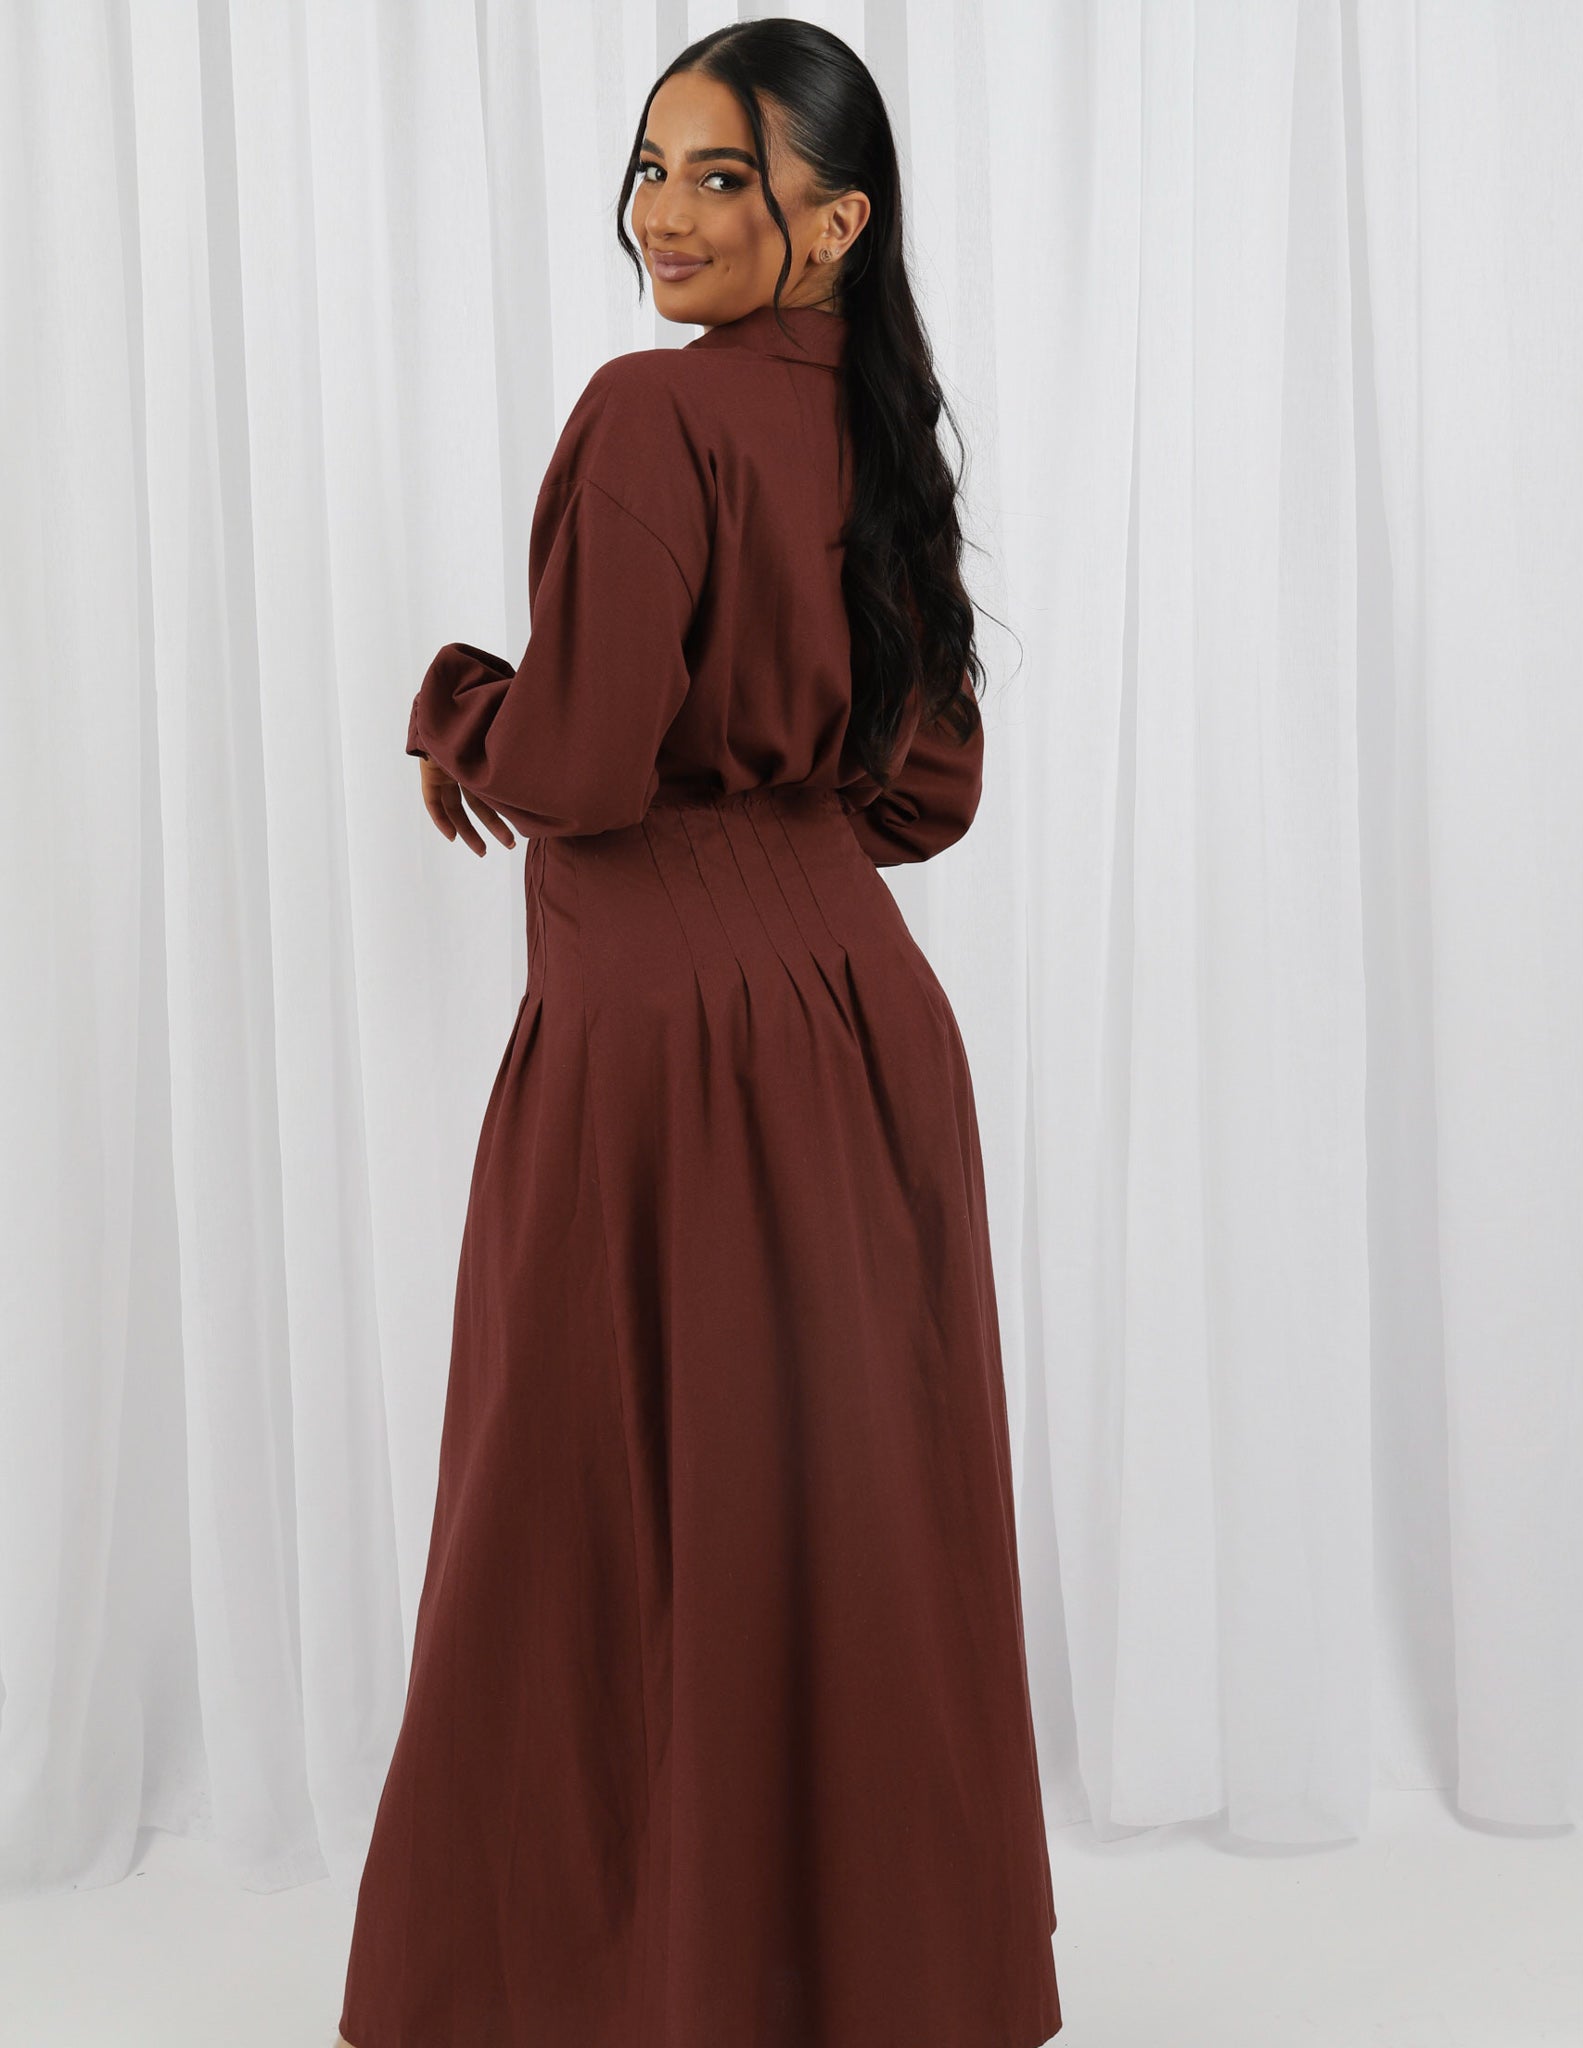 M7920Mahogany-dress-abaya